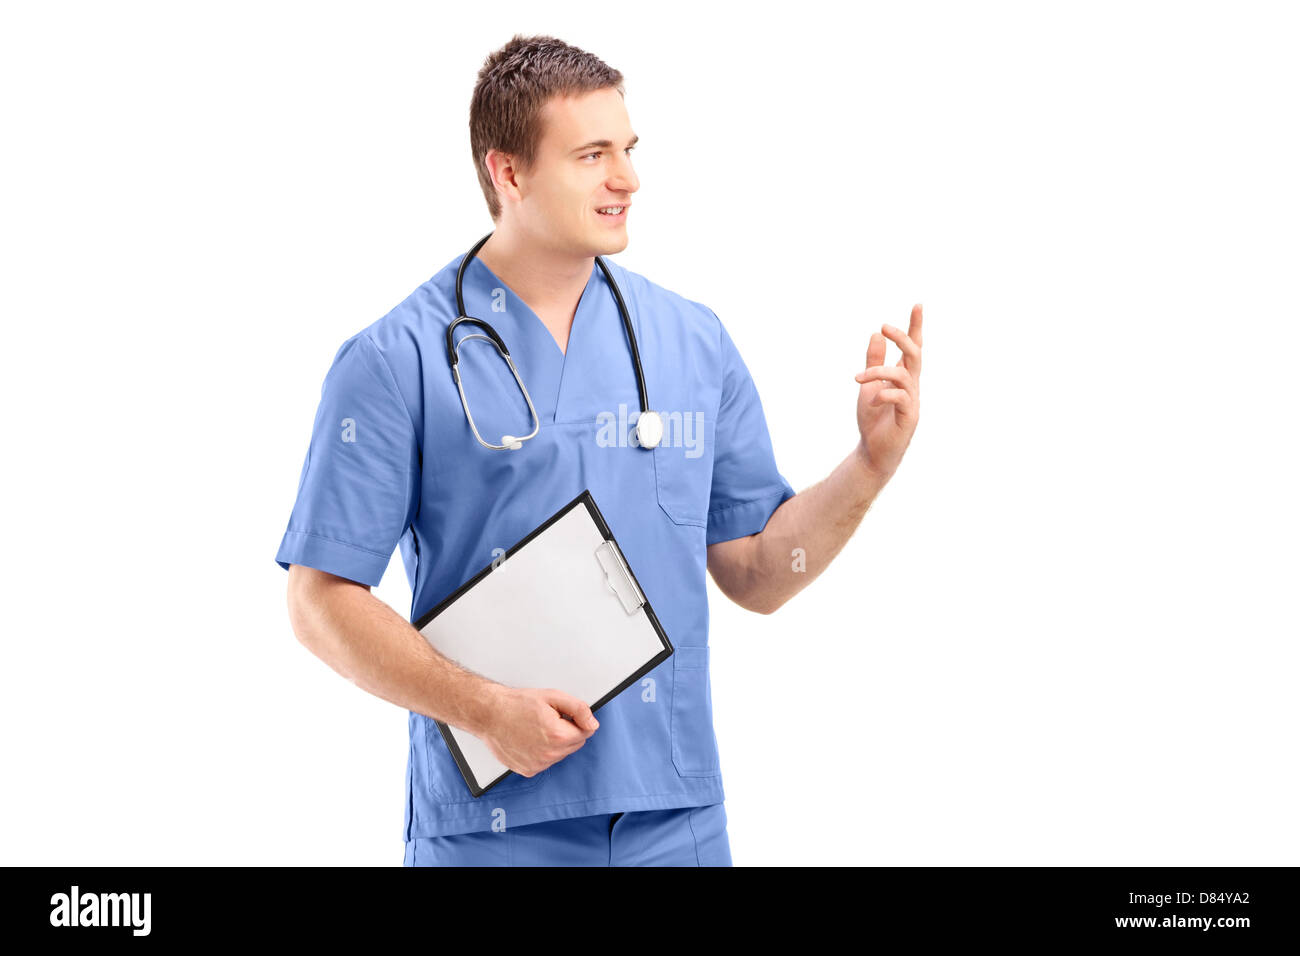 Männlichen Arzt in einer einheitlichen, isoliert auf weißem Hintergrund Stockfoto